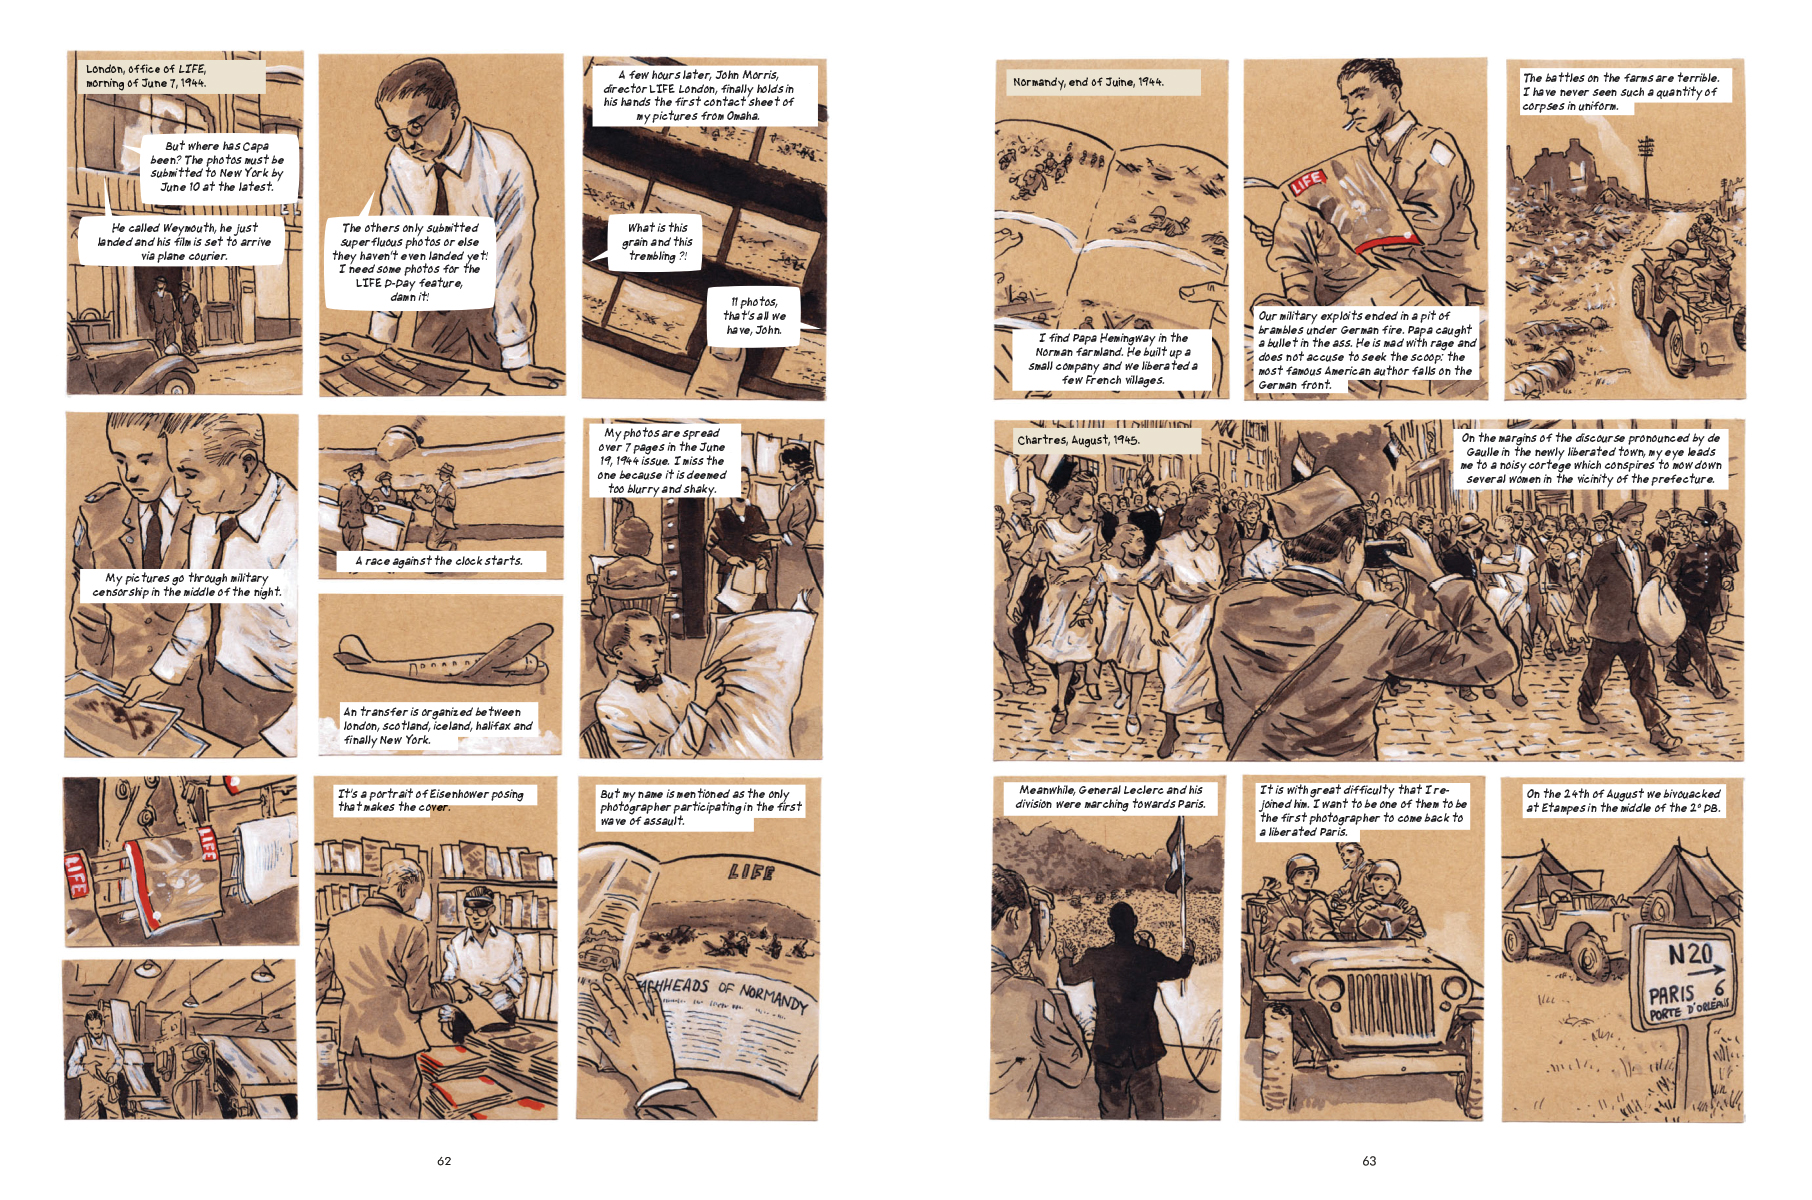 Robert Capa: A Graphic Biography<br />Kiadó: Firefly Books Ltd. 2017<br />Oldalszám: 88 oldal<br />Kötés: keménytáblás<br />ISBN: 9781770859289<br />Nyelv: angol